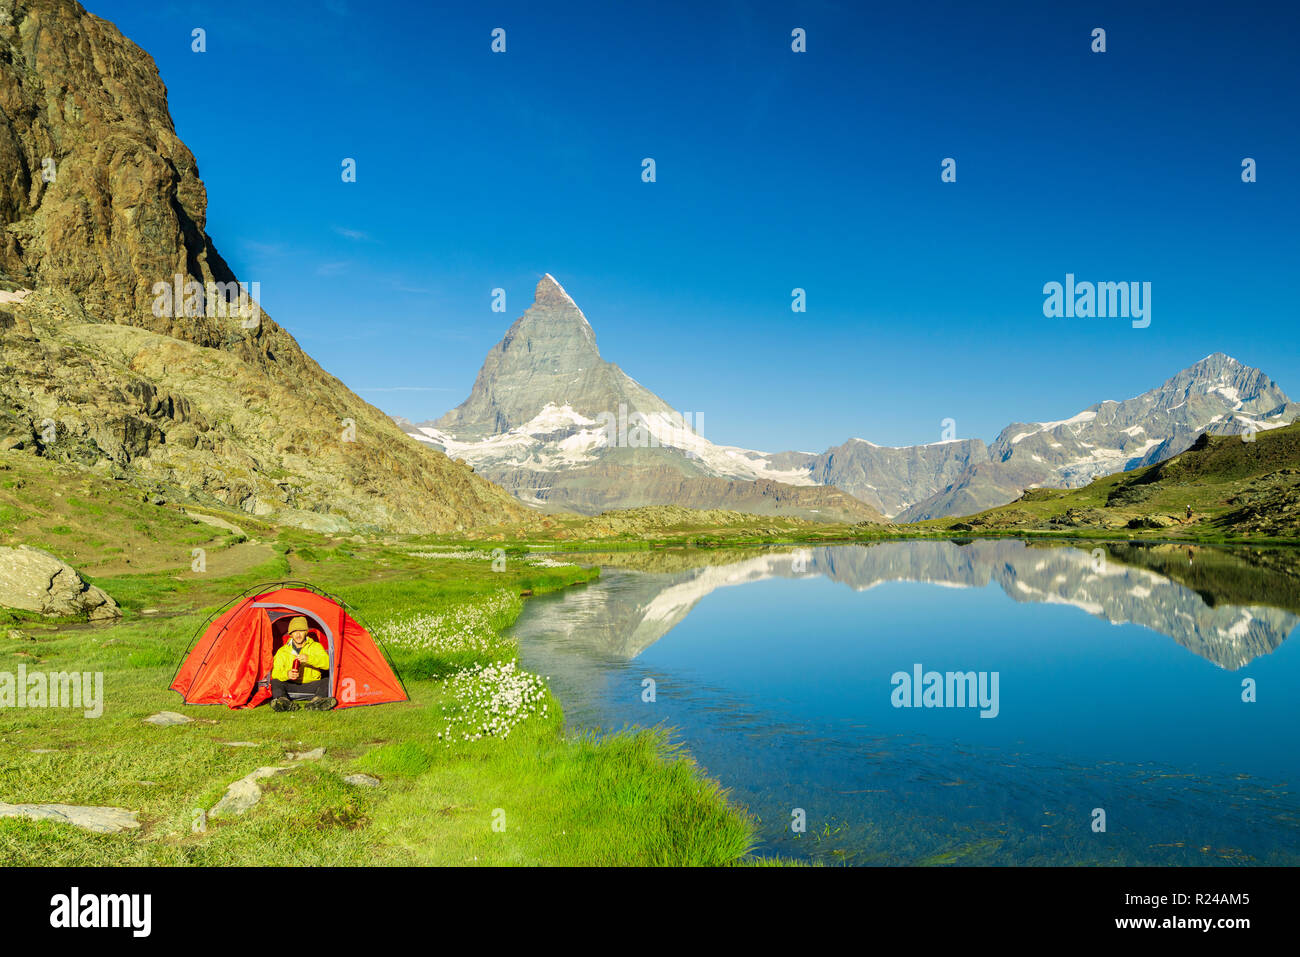 Tenda sulla riva del lago Riffelsee affacciata sul Cervino e Zermatt, canton Vallese, alpi svizzere, Svizzera, Europa Foto Stock